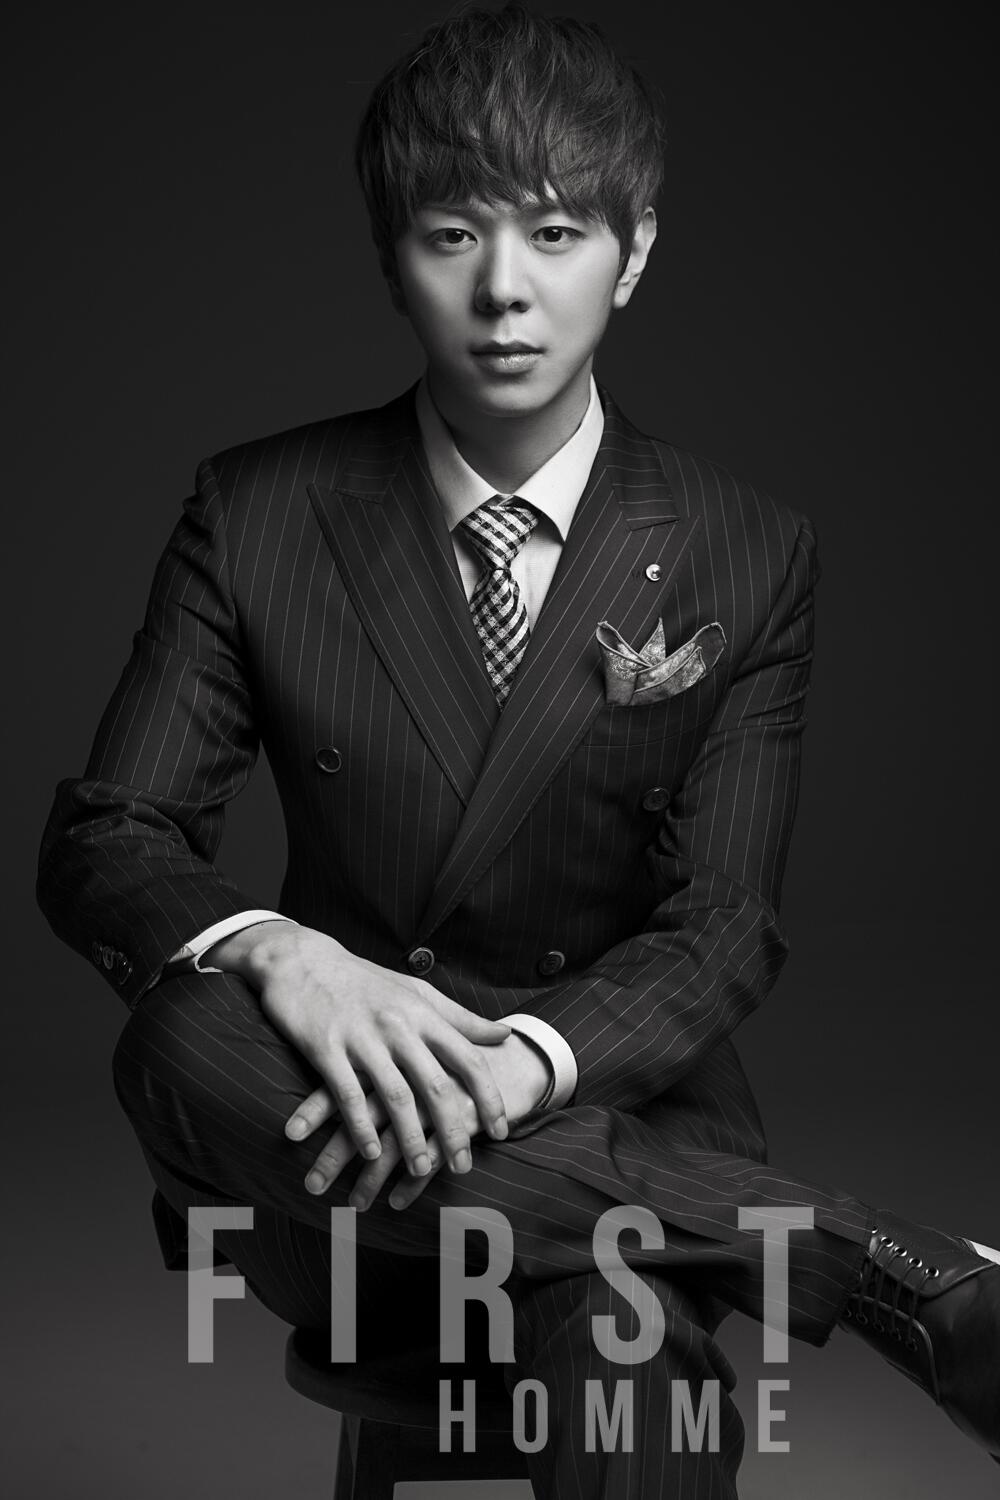 2일(월), ZE:A(제국의아이들) 미니 앨범 'First Homme' 발매 예정 | 인스티즈